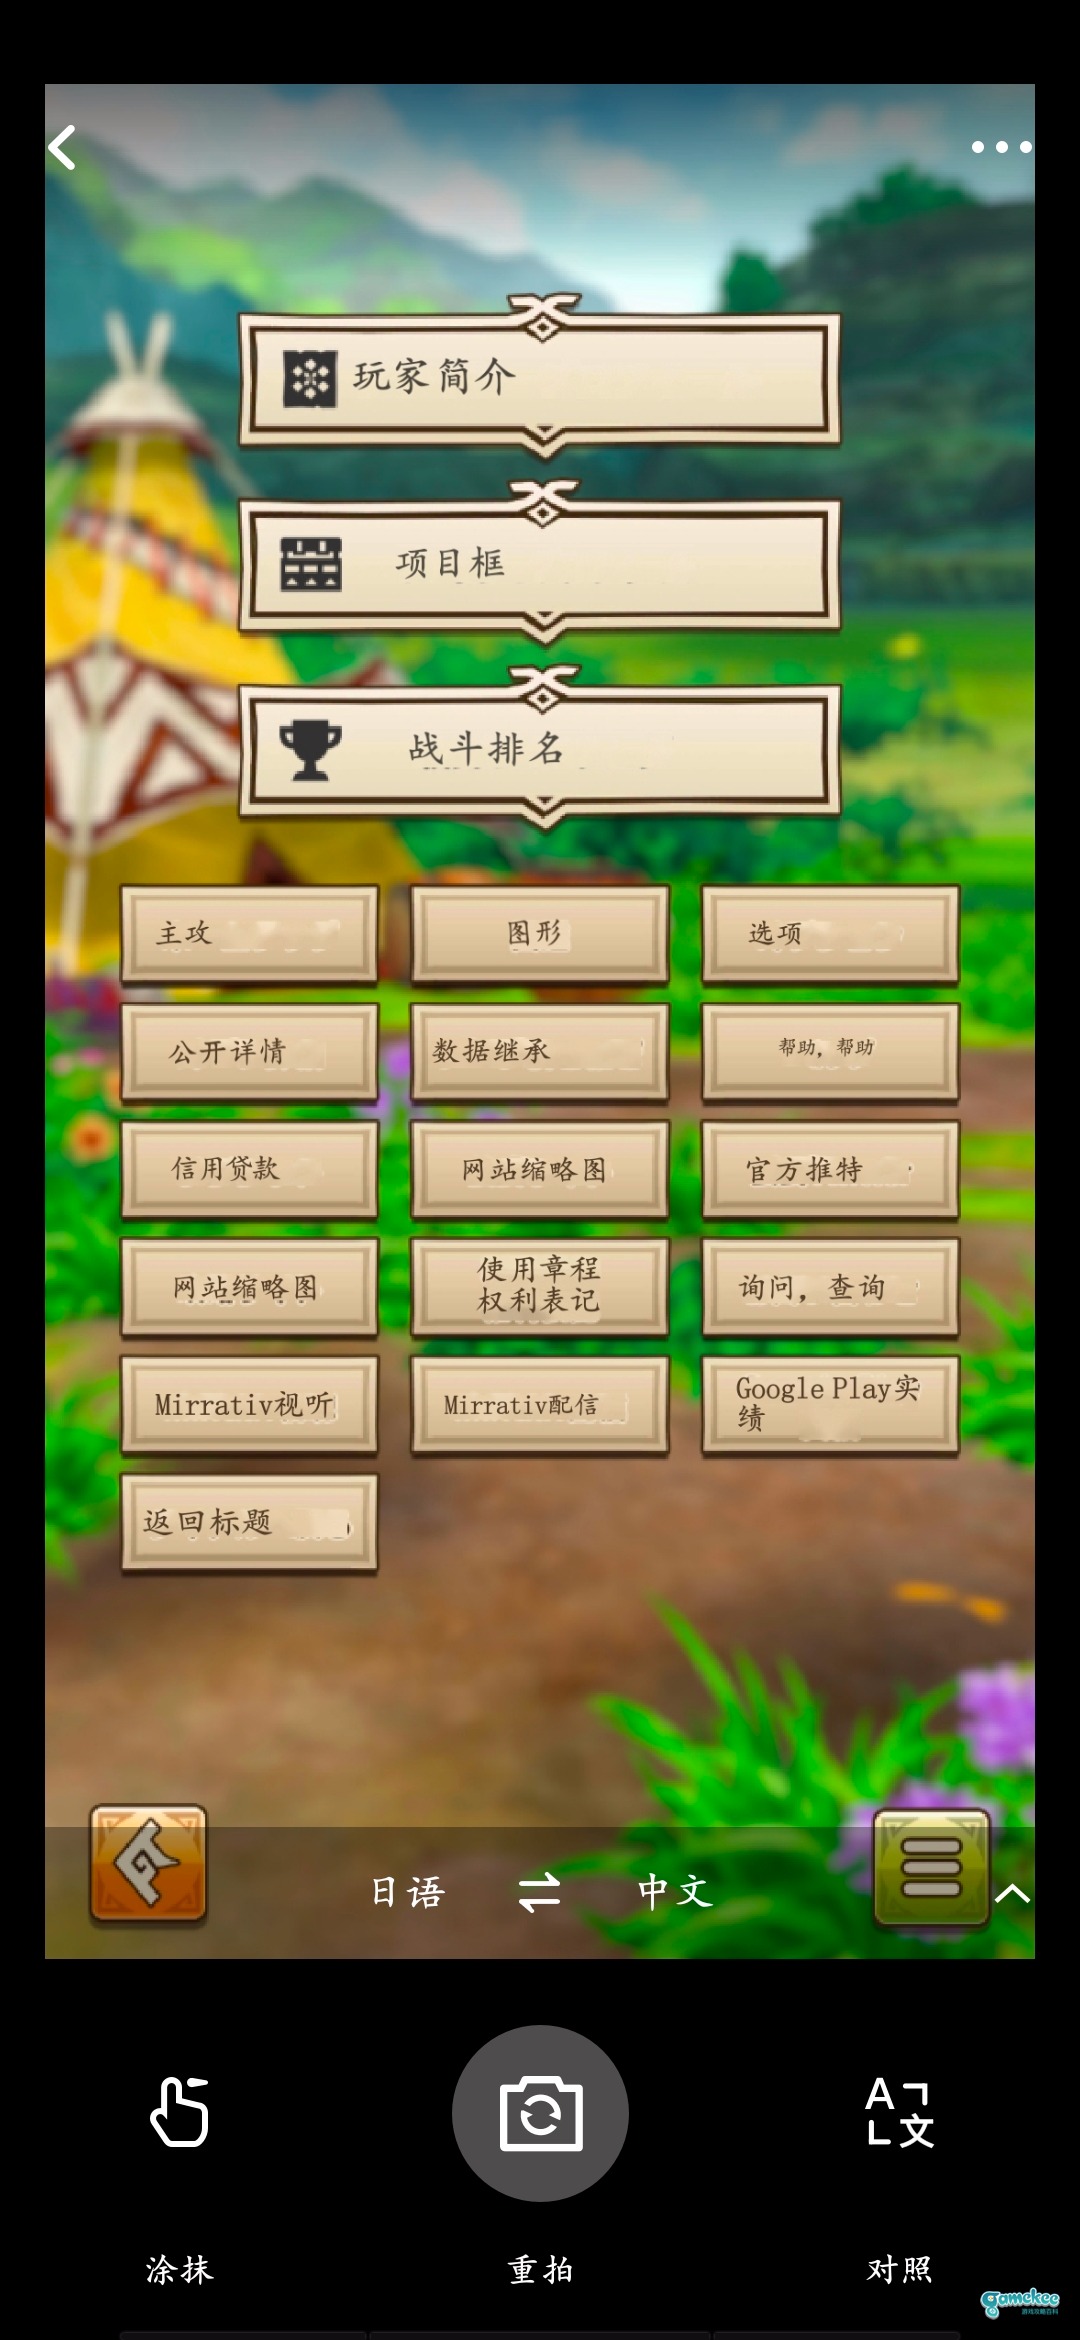 怪物猎人Riders设置及界面中文翻译 游戏设置中文翻译说亮